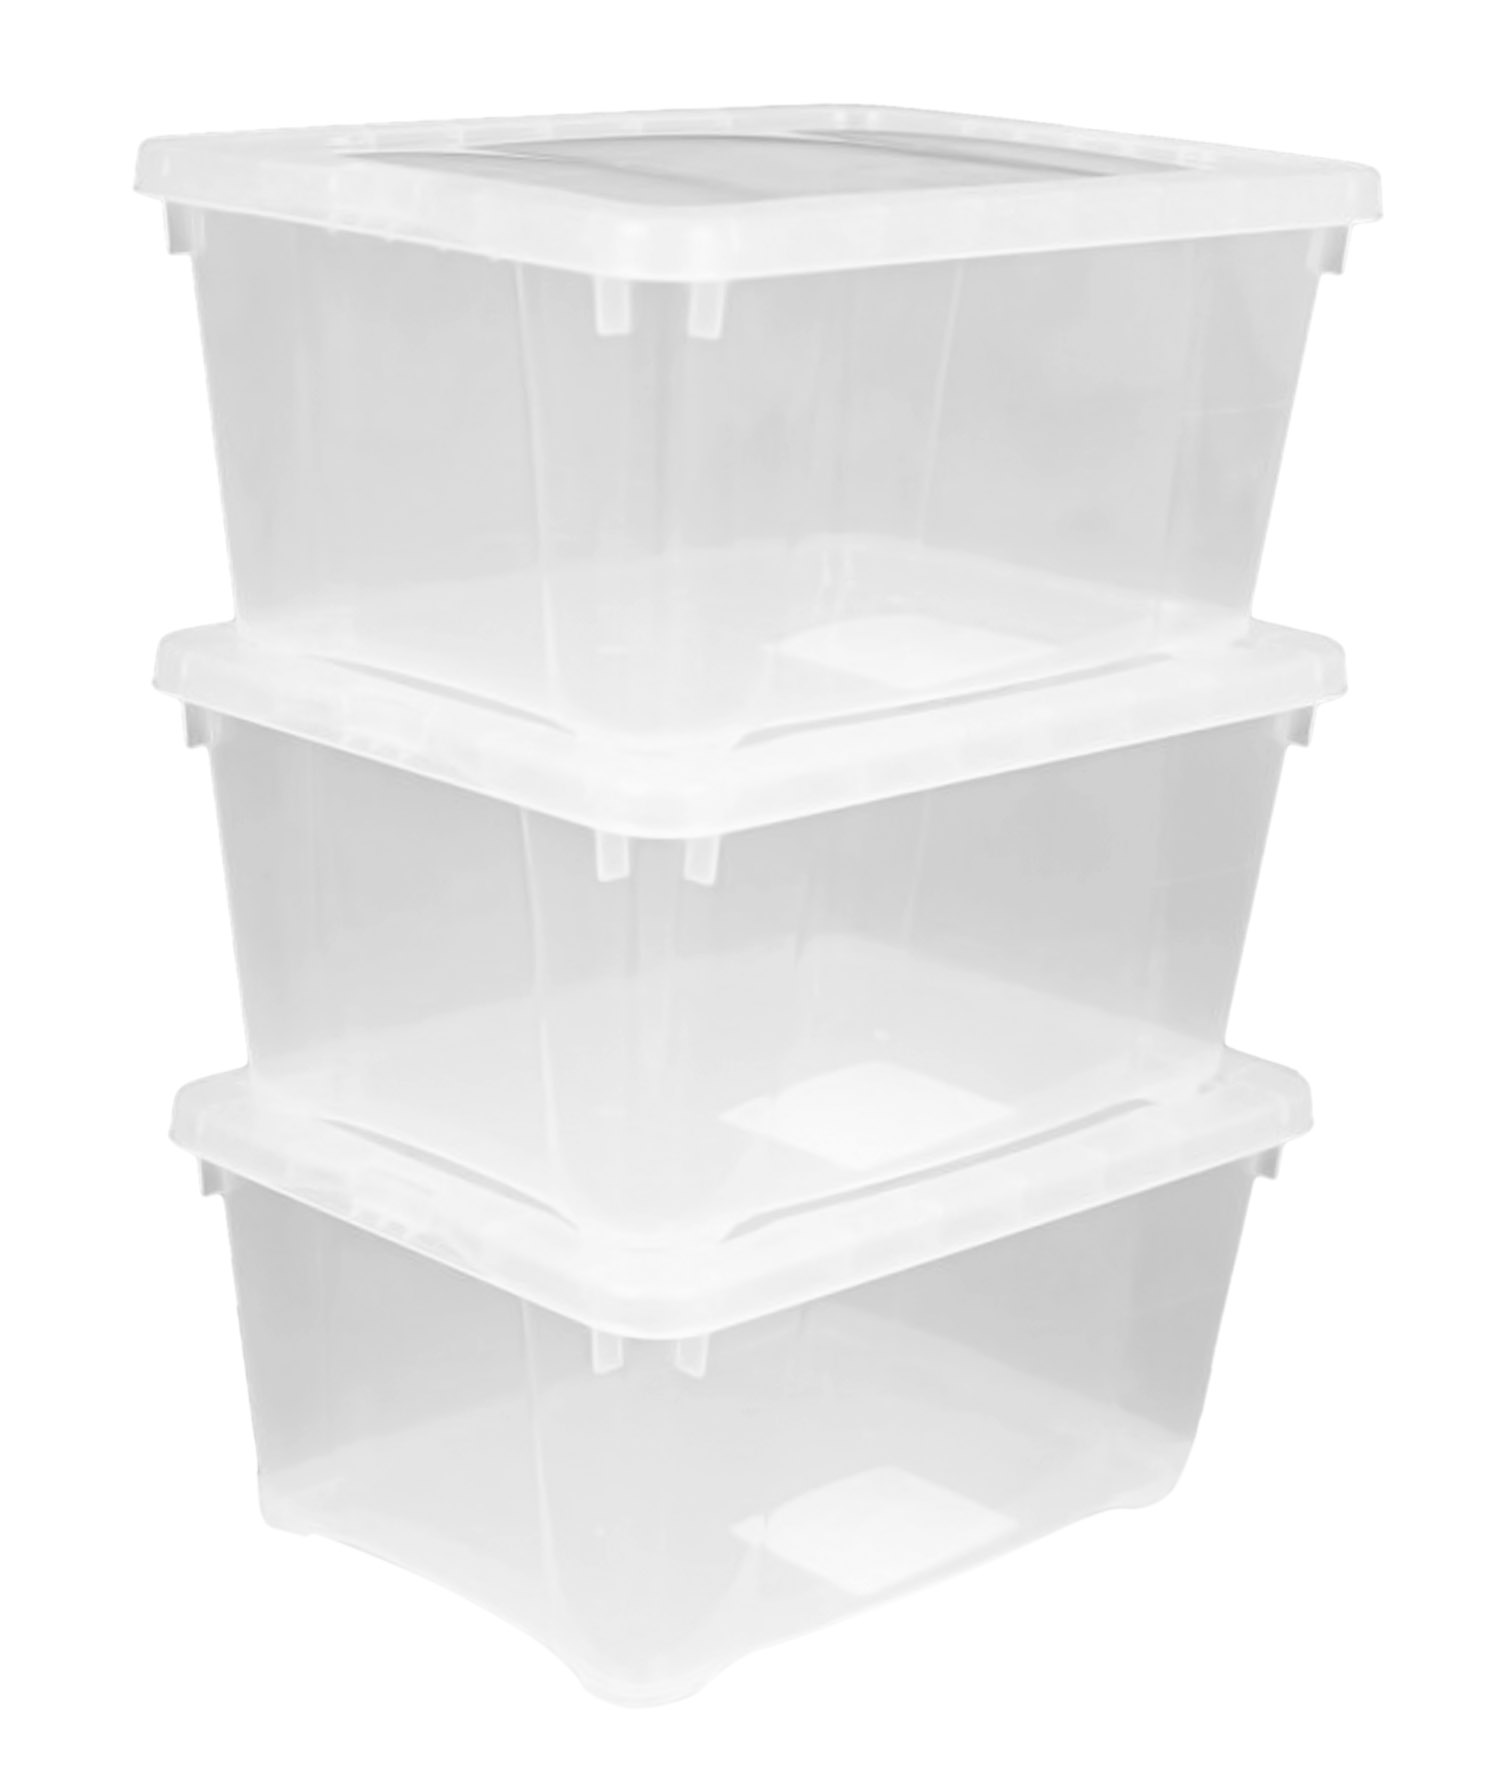 Kunststoff Aufbewahrungsbox transparent 8 Liter - 3er Set - Klarsicht Universal Box 37 x 26 cm